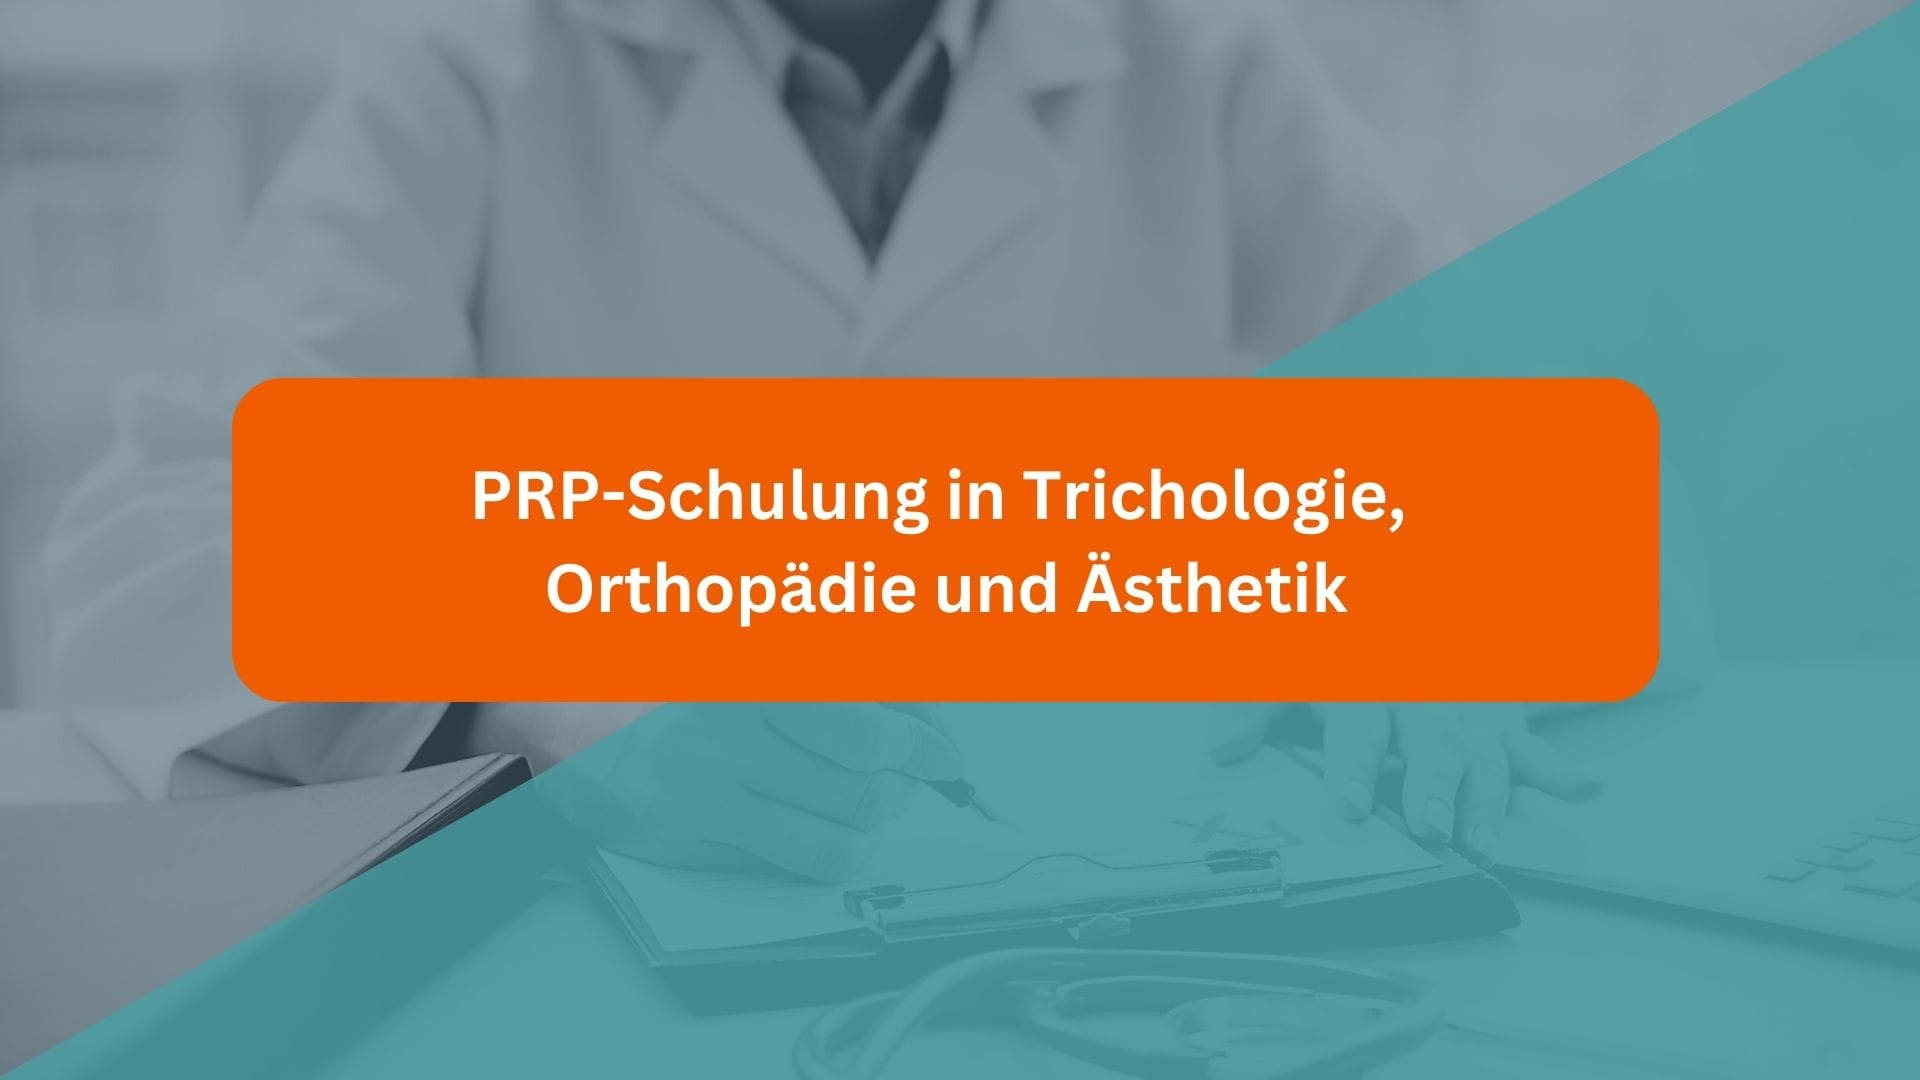 FAQ - PRP-Schulung in den Bereichen Trichologie, Orthopädie und Ästhetik